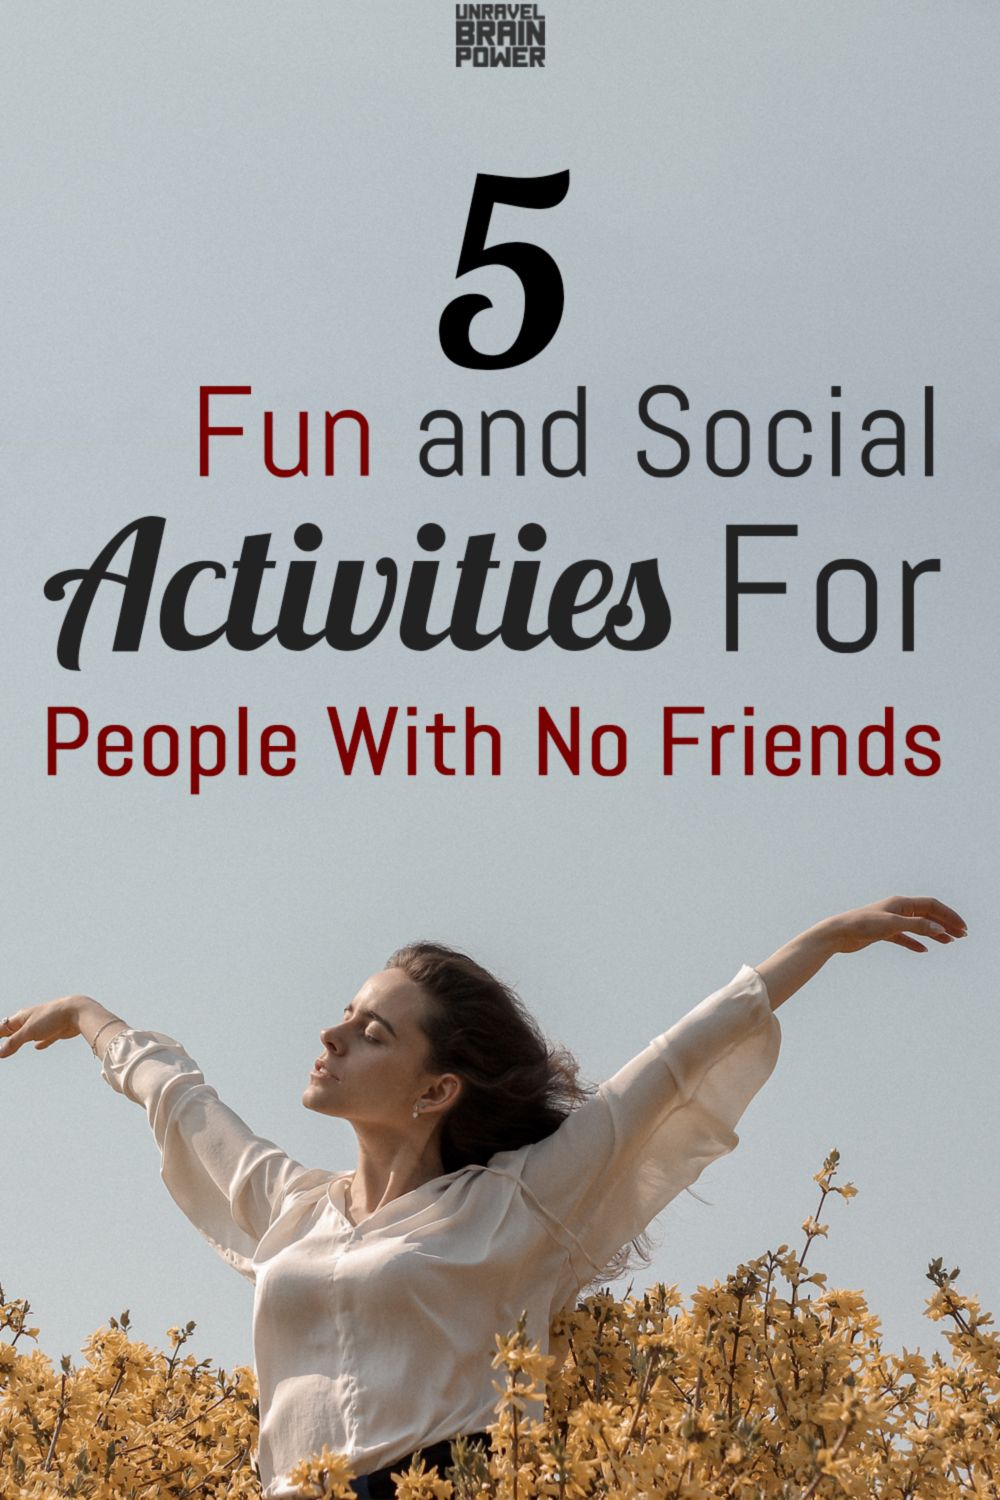 Zabavne dejavnosti za ljudi brez prijateljev